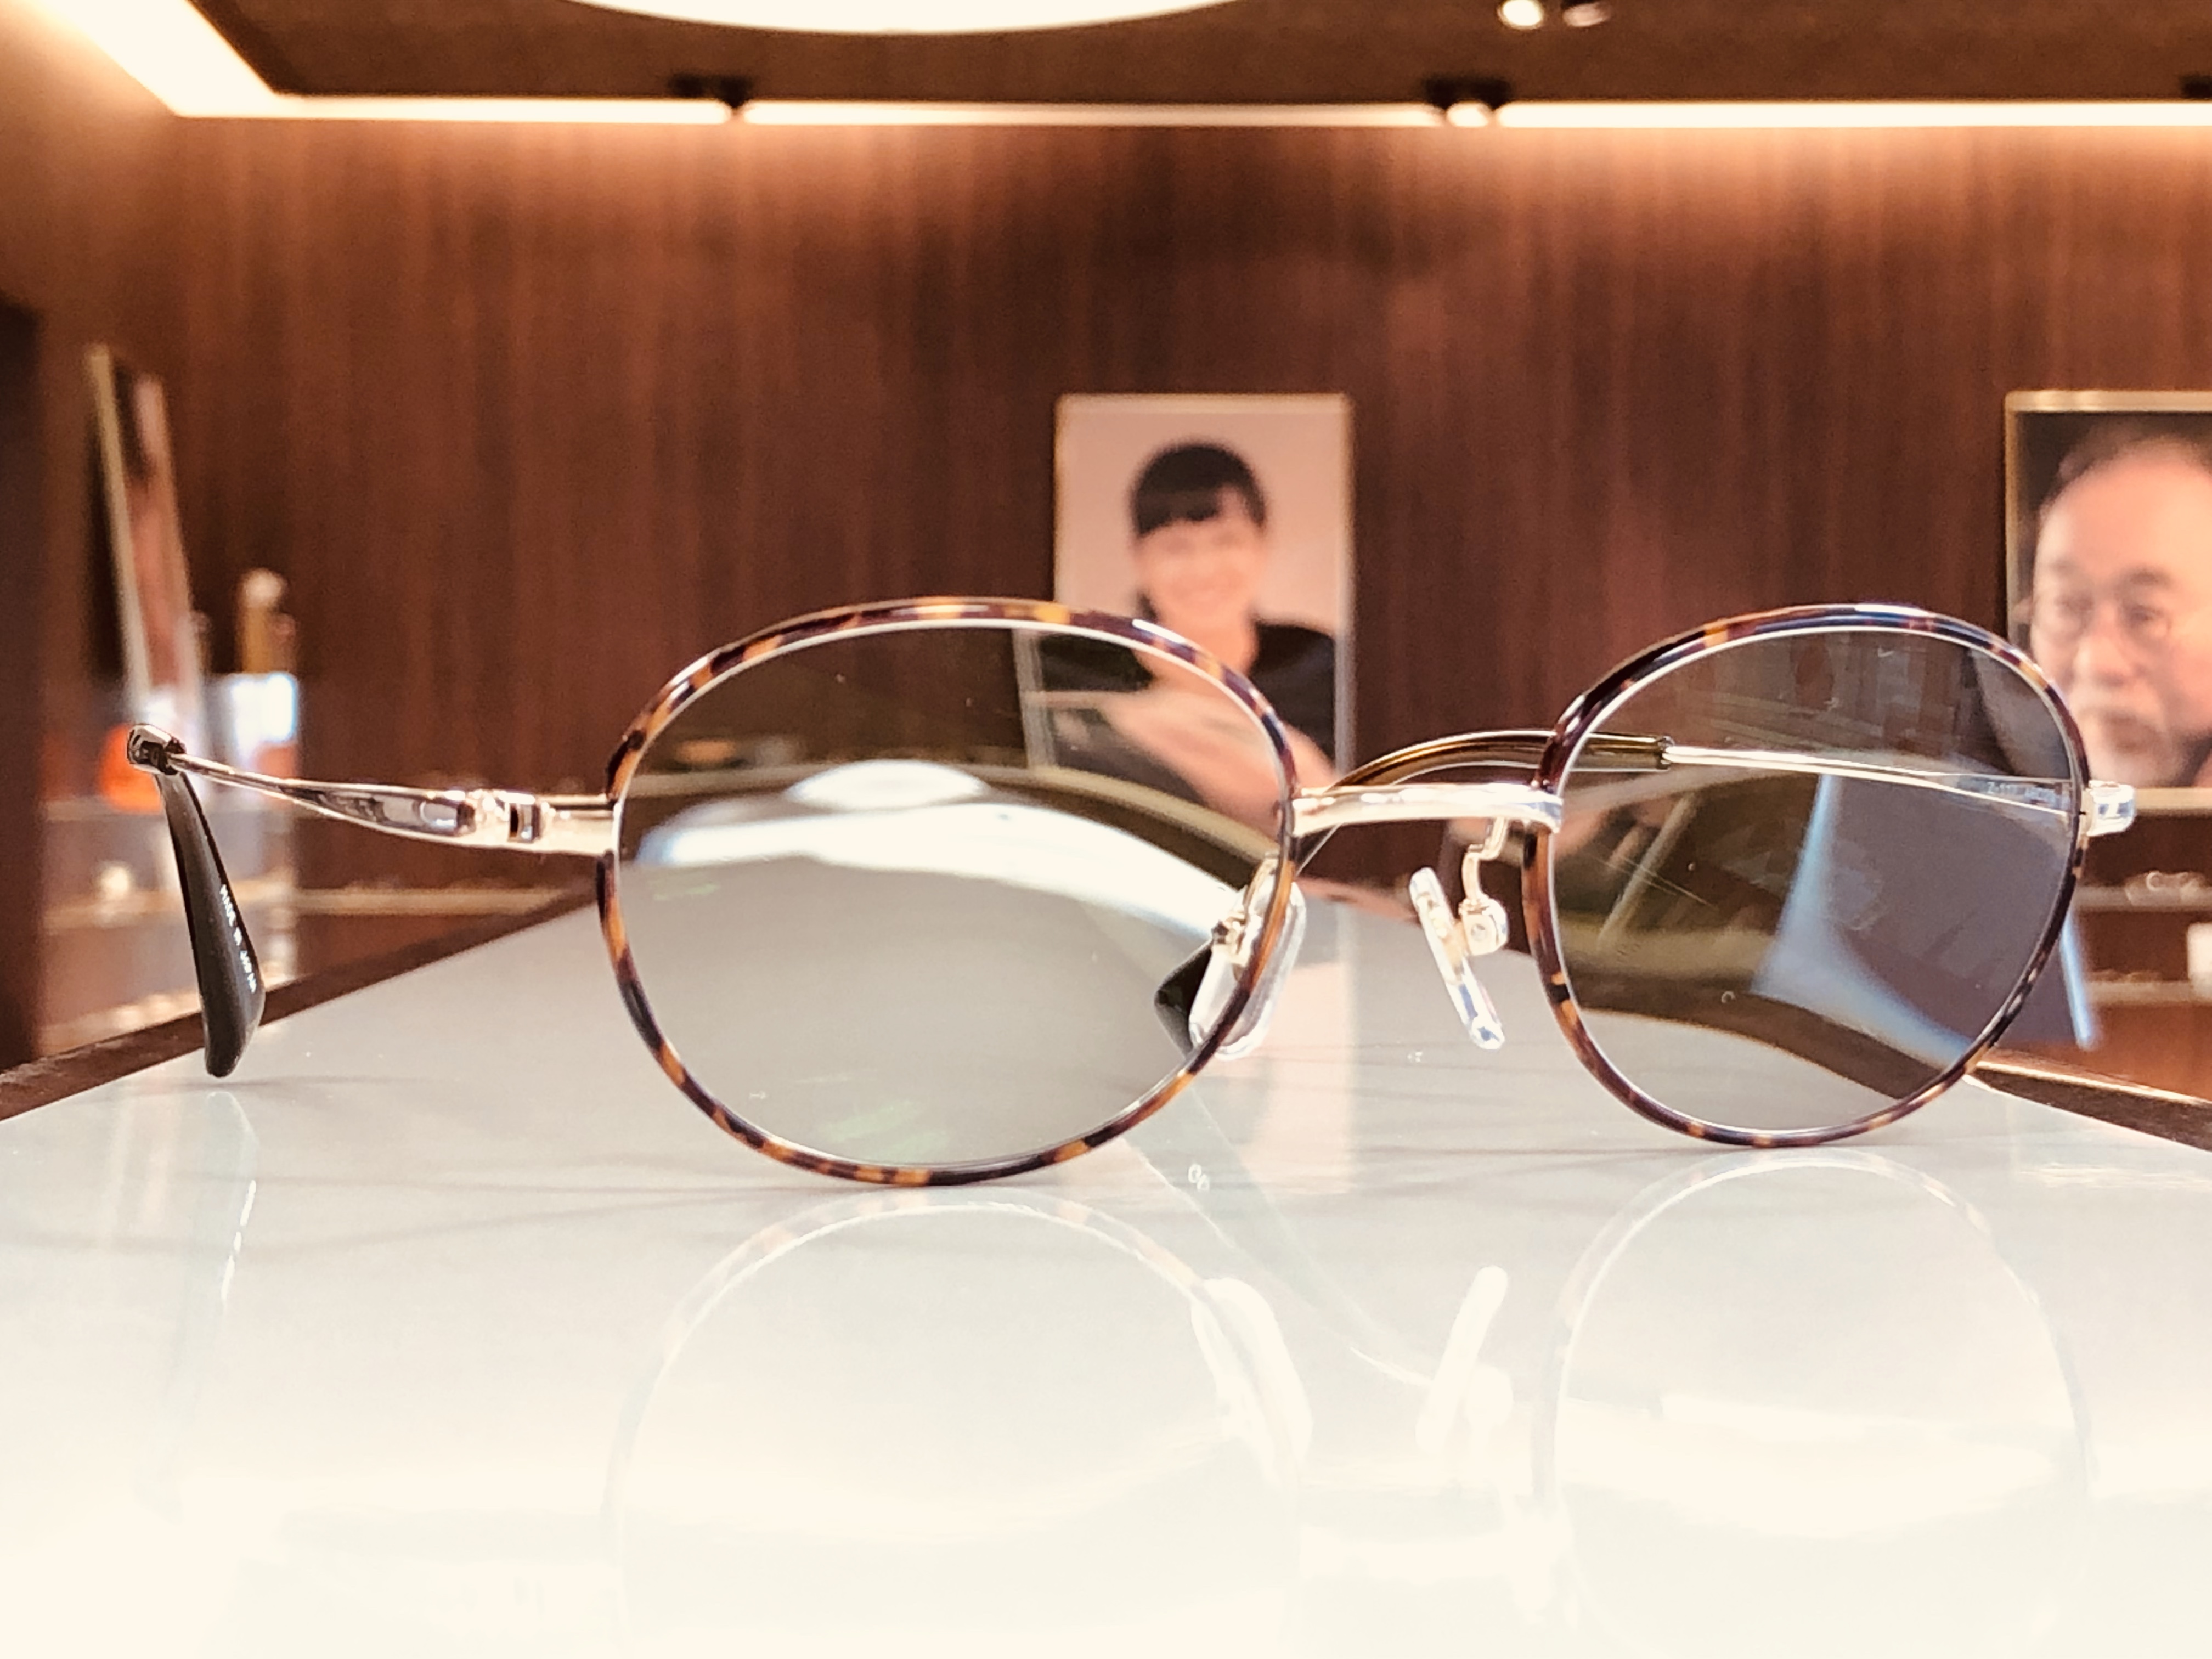 【 白内障術後の多焦点眼内レンズを挿入されたお客様のメガネを製作しました(￣▽￣)】　最近増えてきましたね、多焦点眼内レンズ。